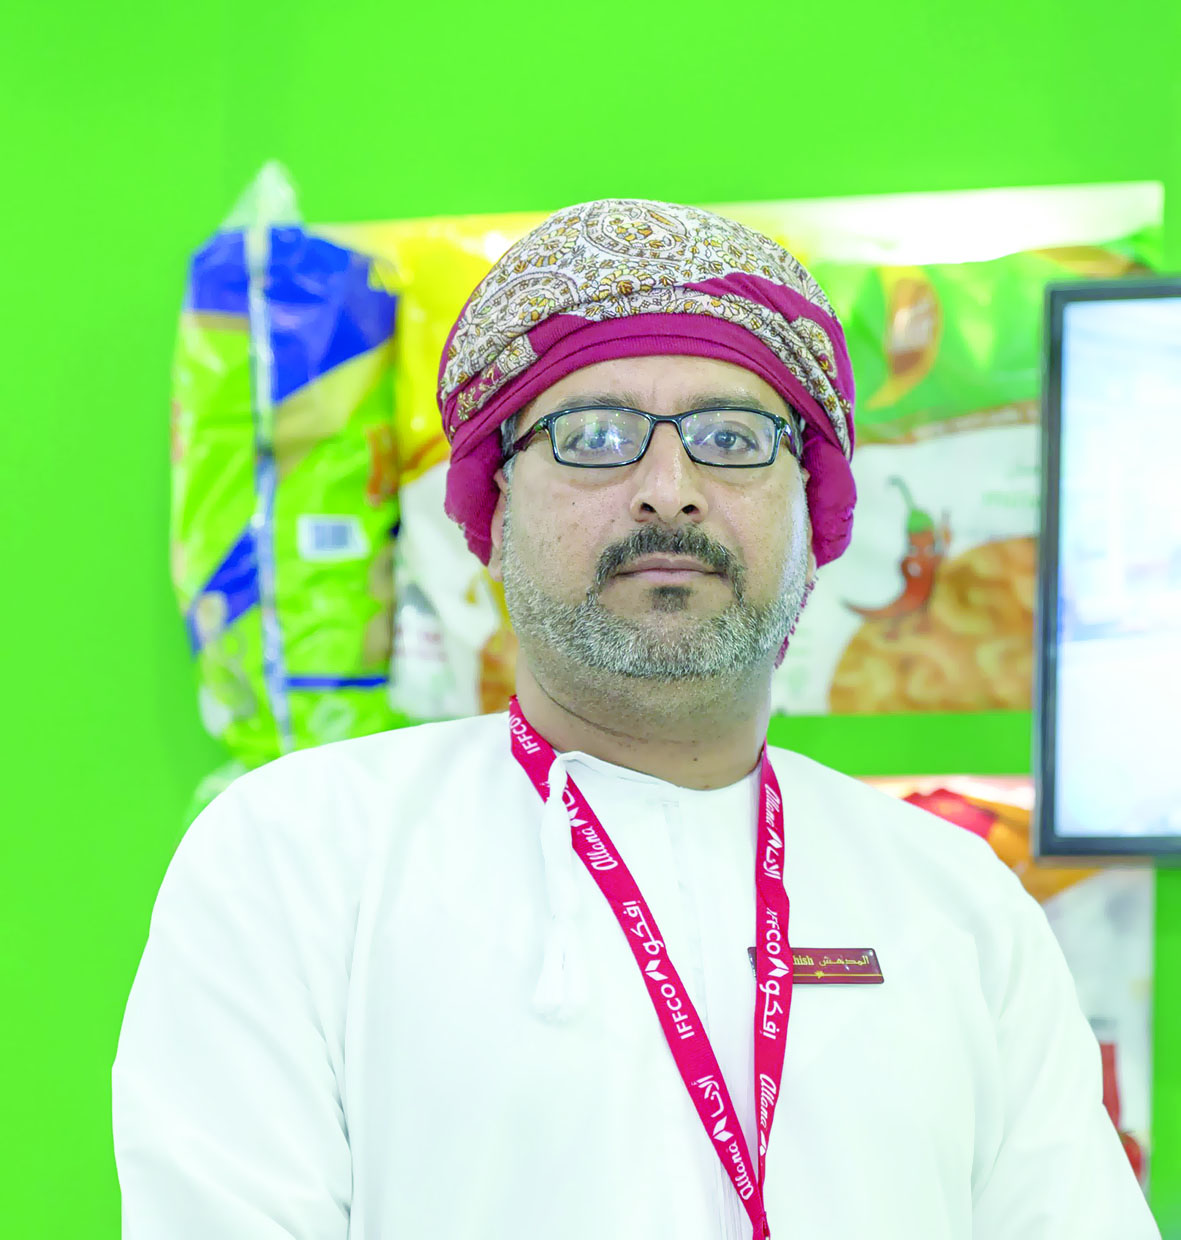 المنتجات العمانية في معرض "جلفود" تجذب زوّار دبي